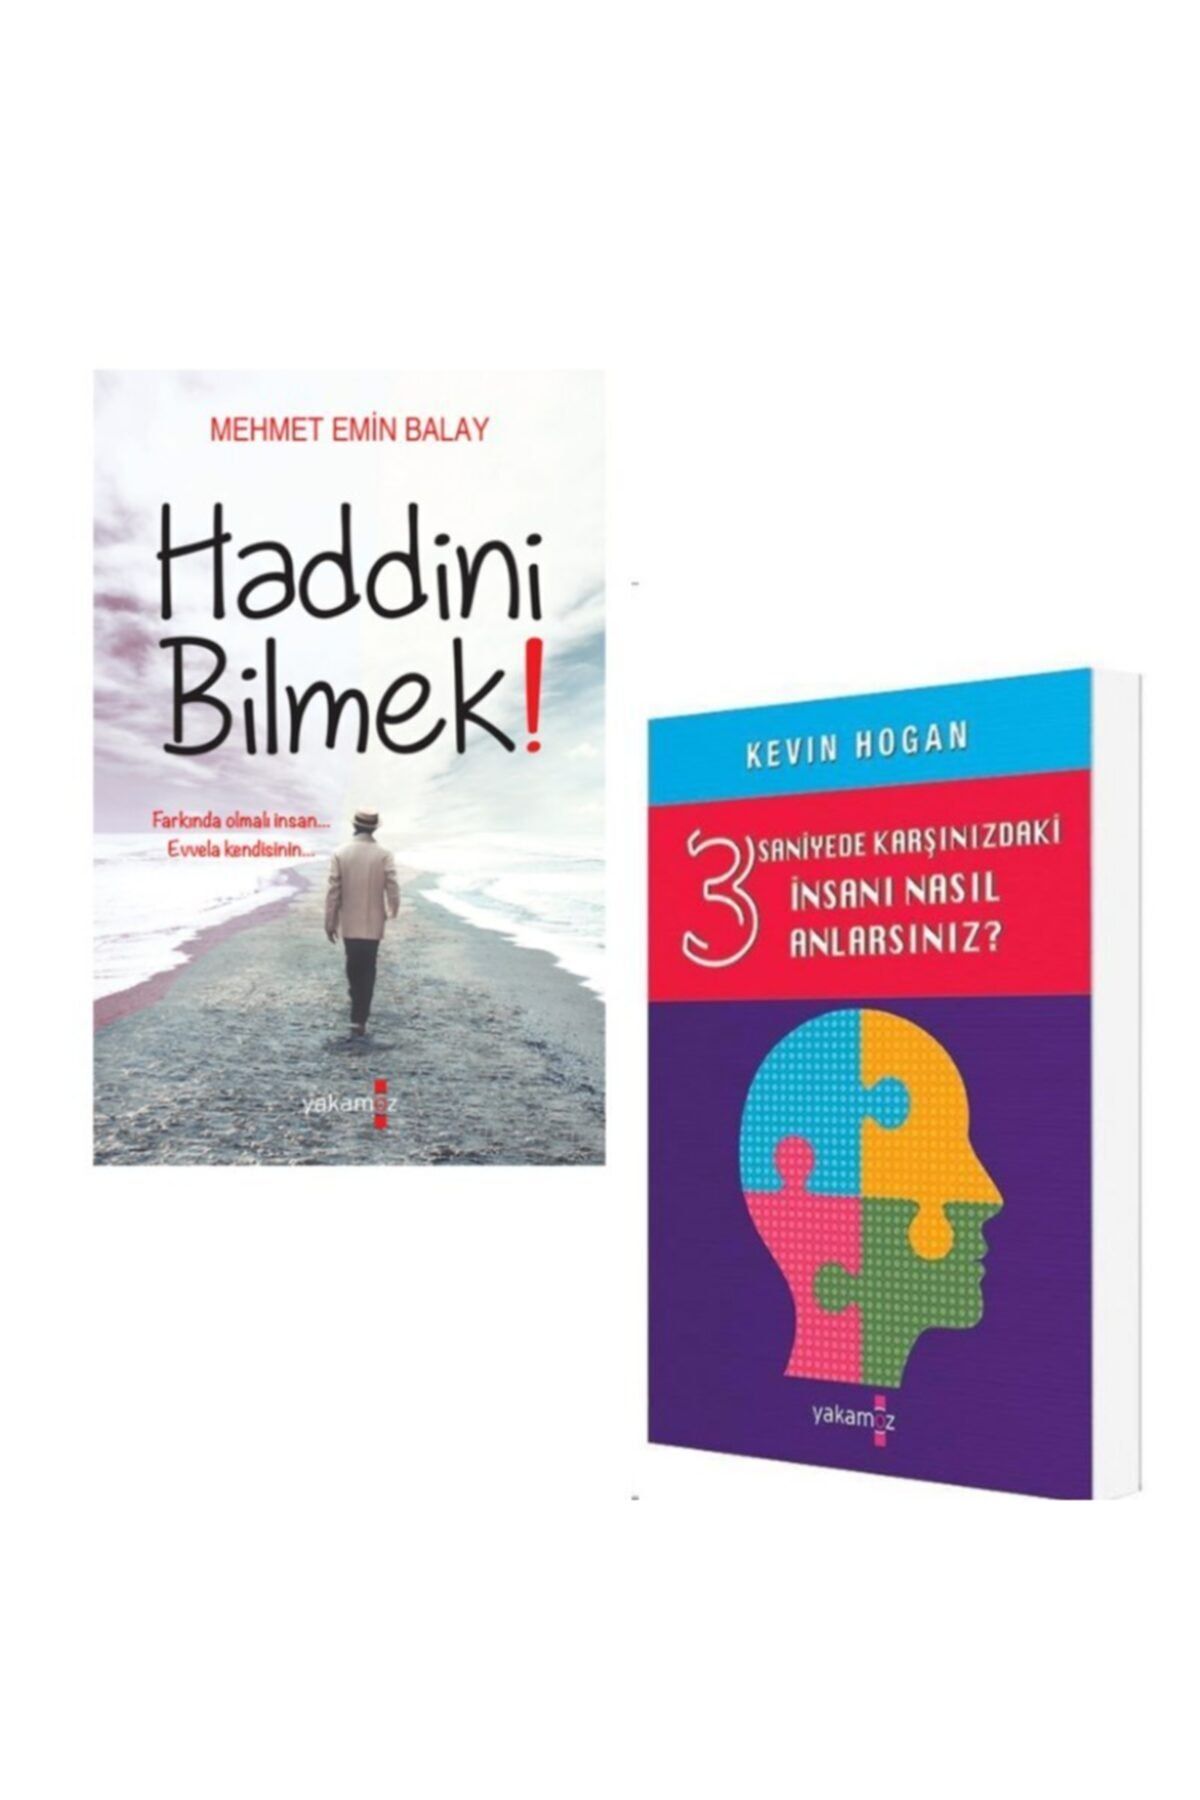 Yakamoz Yayınları Mehmet Balay Haddini Bilmek, / Kevin Hogan 3 Saniyede Karşınızdaki Insanları Nasıl Anlarsınız